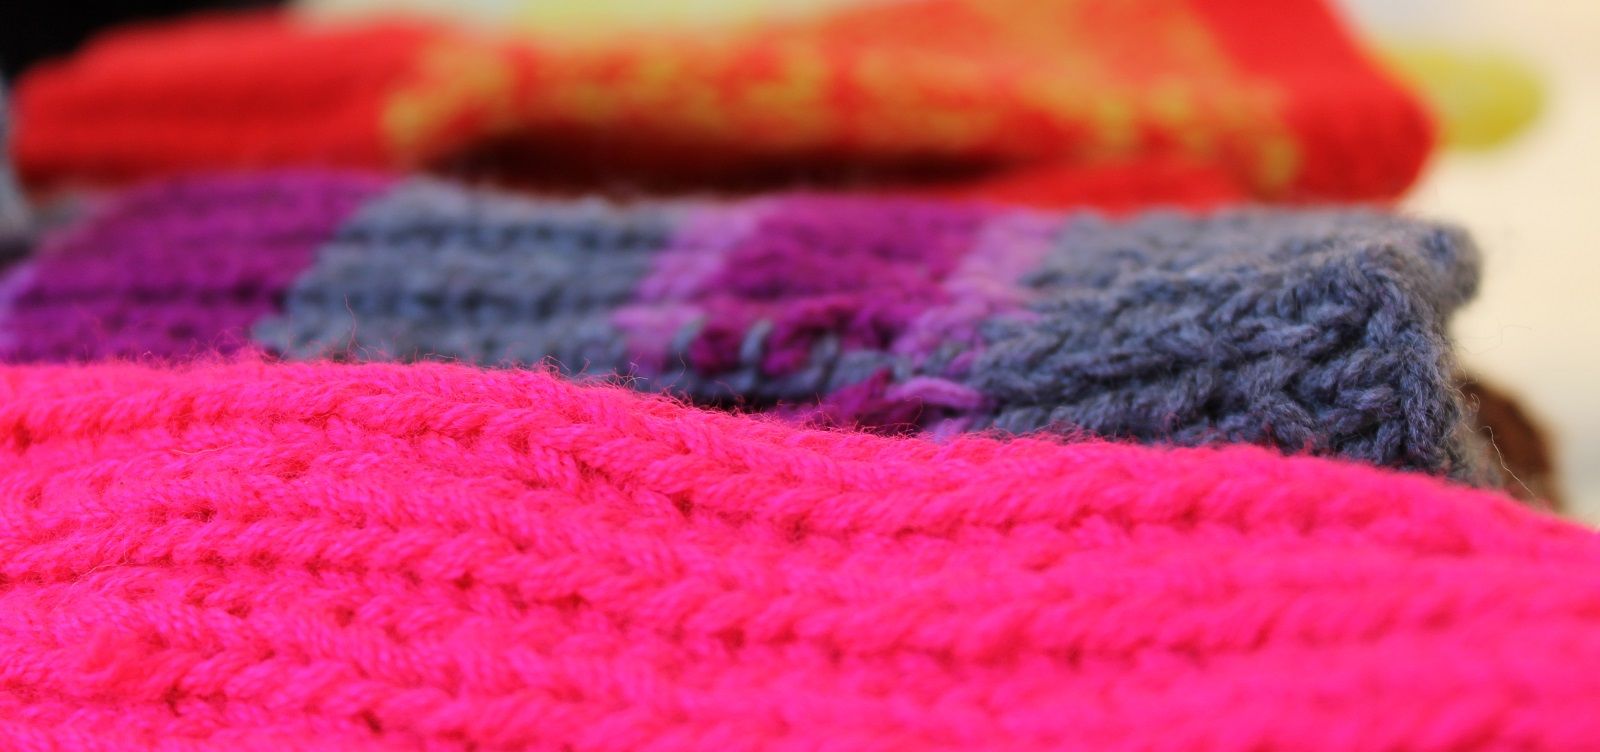 Cosa fare con la lana infeltrita? Ecco 6 rimedi casalinghi